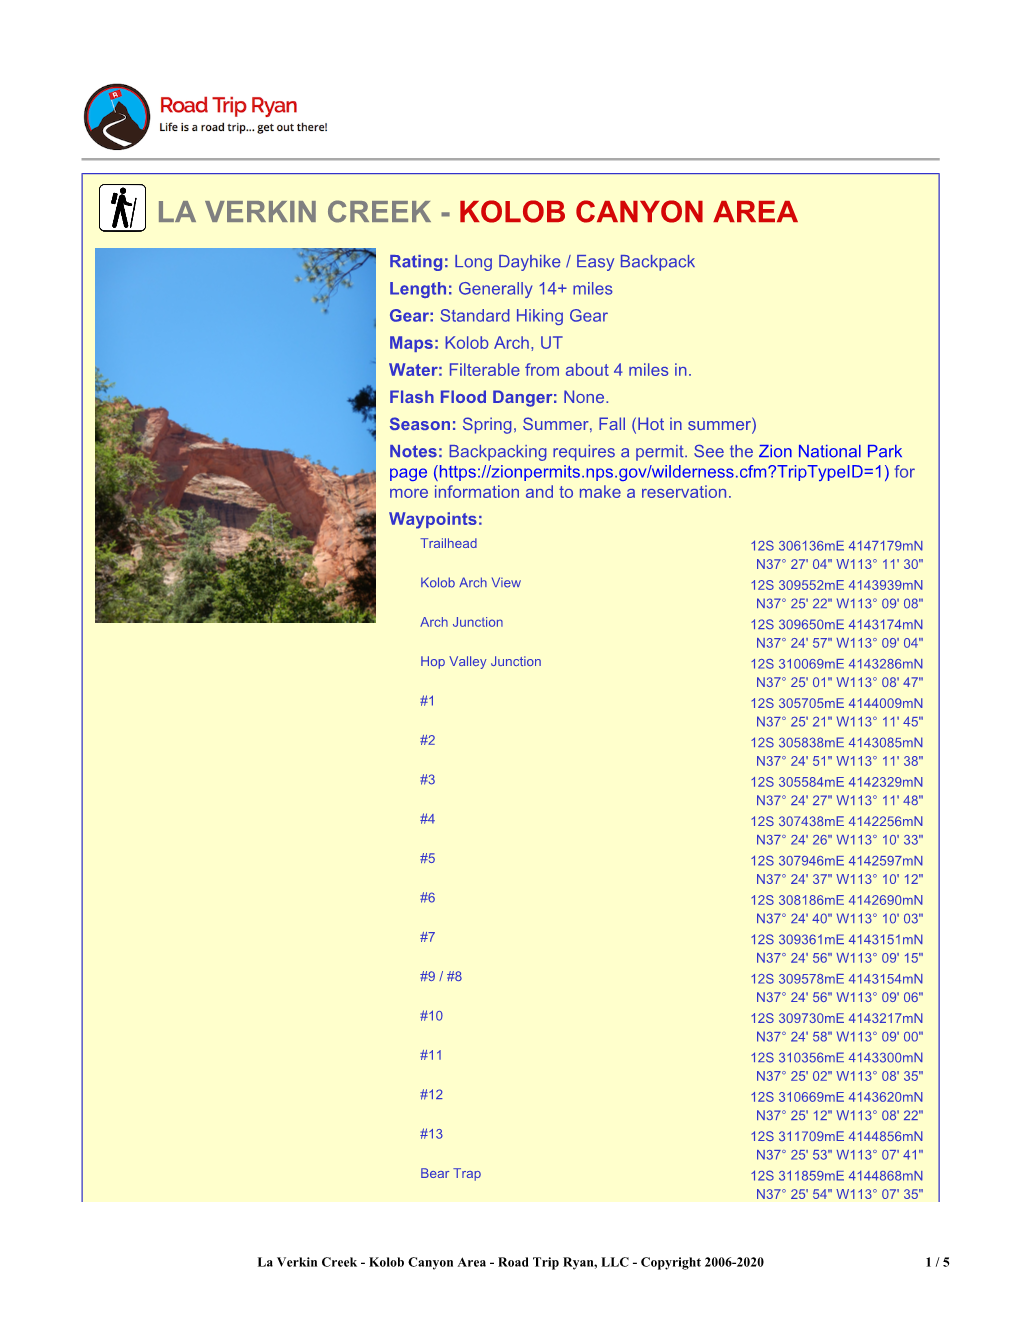 La Verkin Creek - Kolob Canyon Area